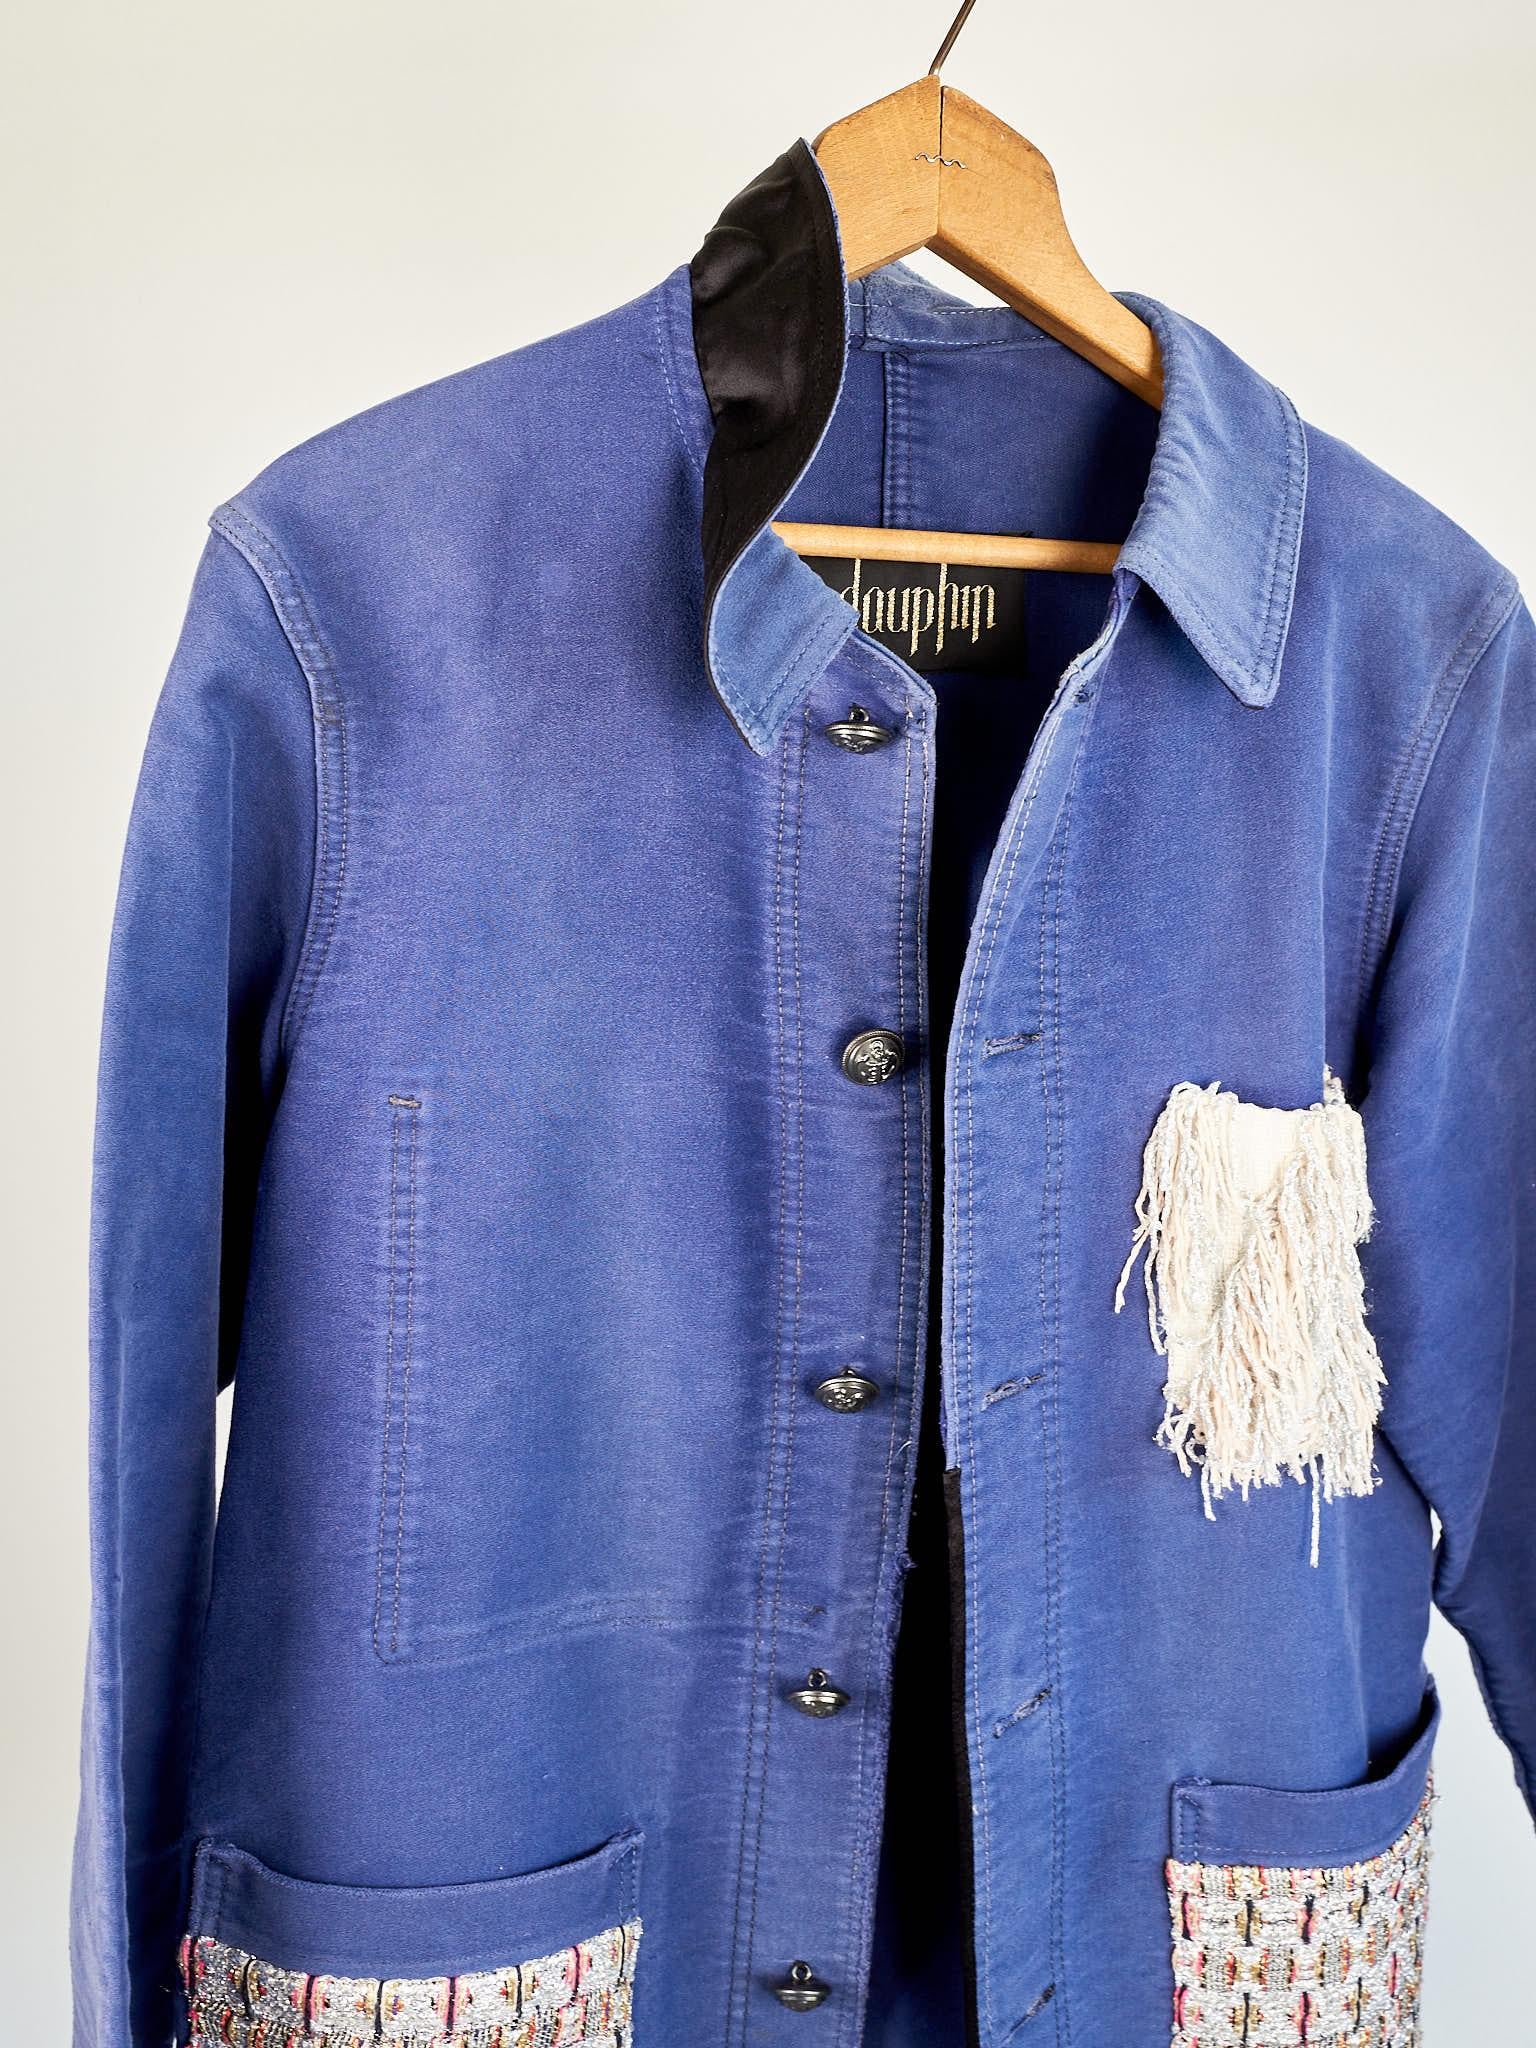 Women's Repurposed Vintage Jacket Embellished French Work Blue Tweed J Dauphin Medium